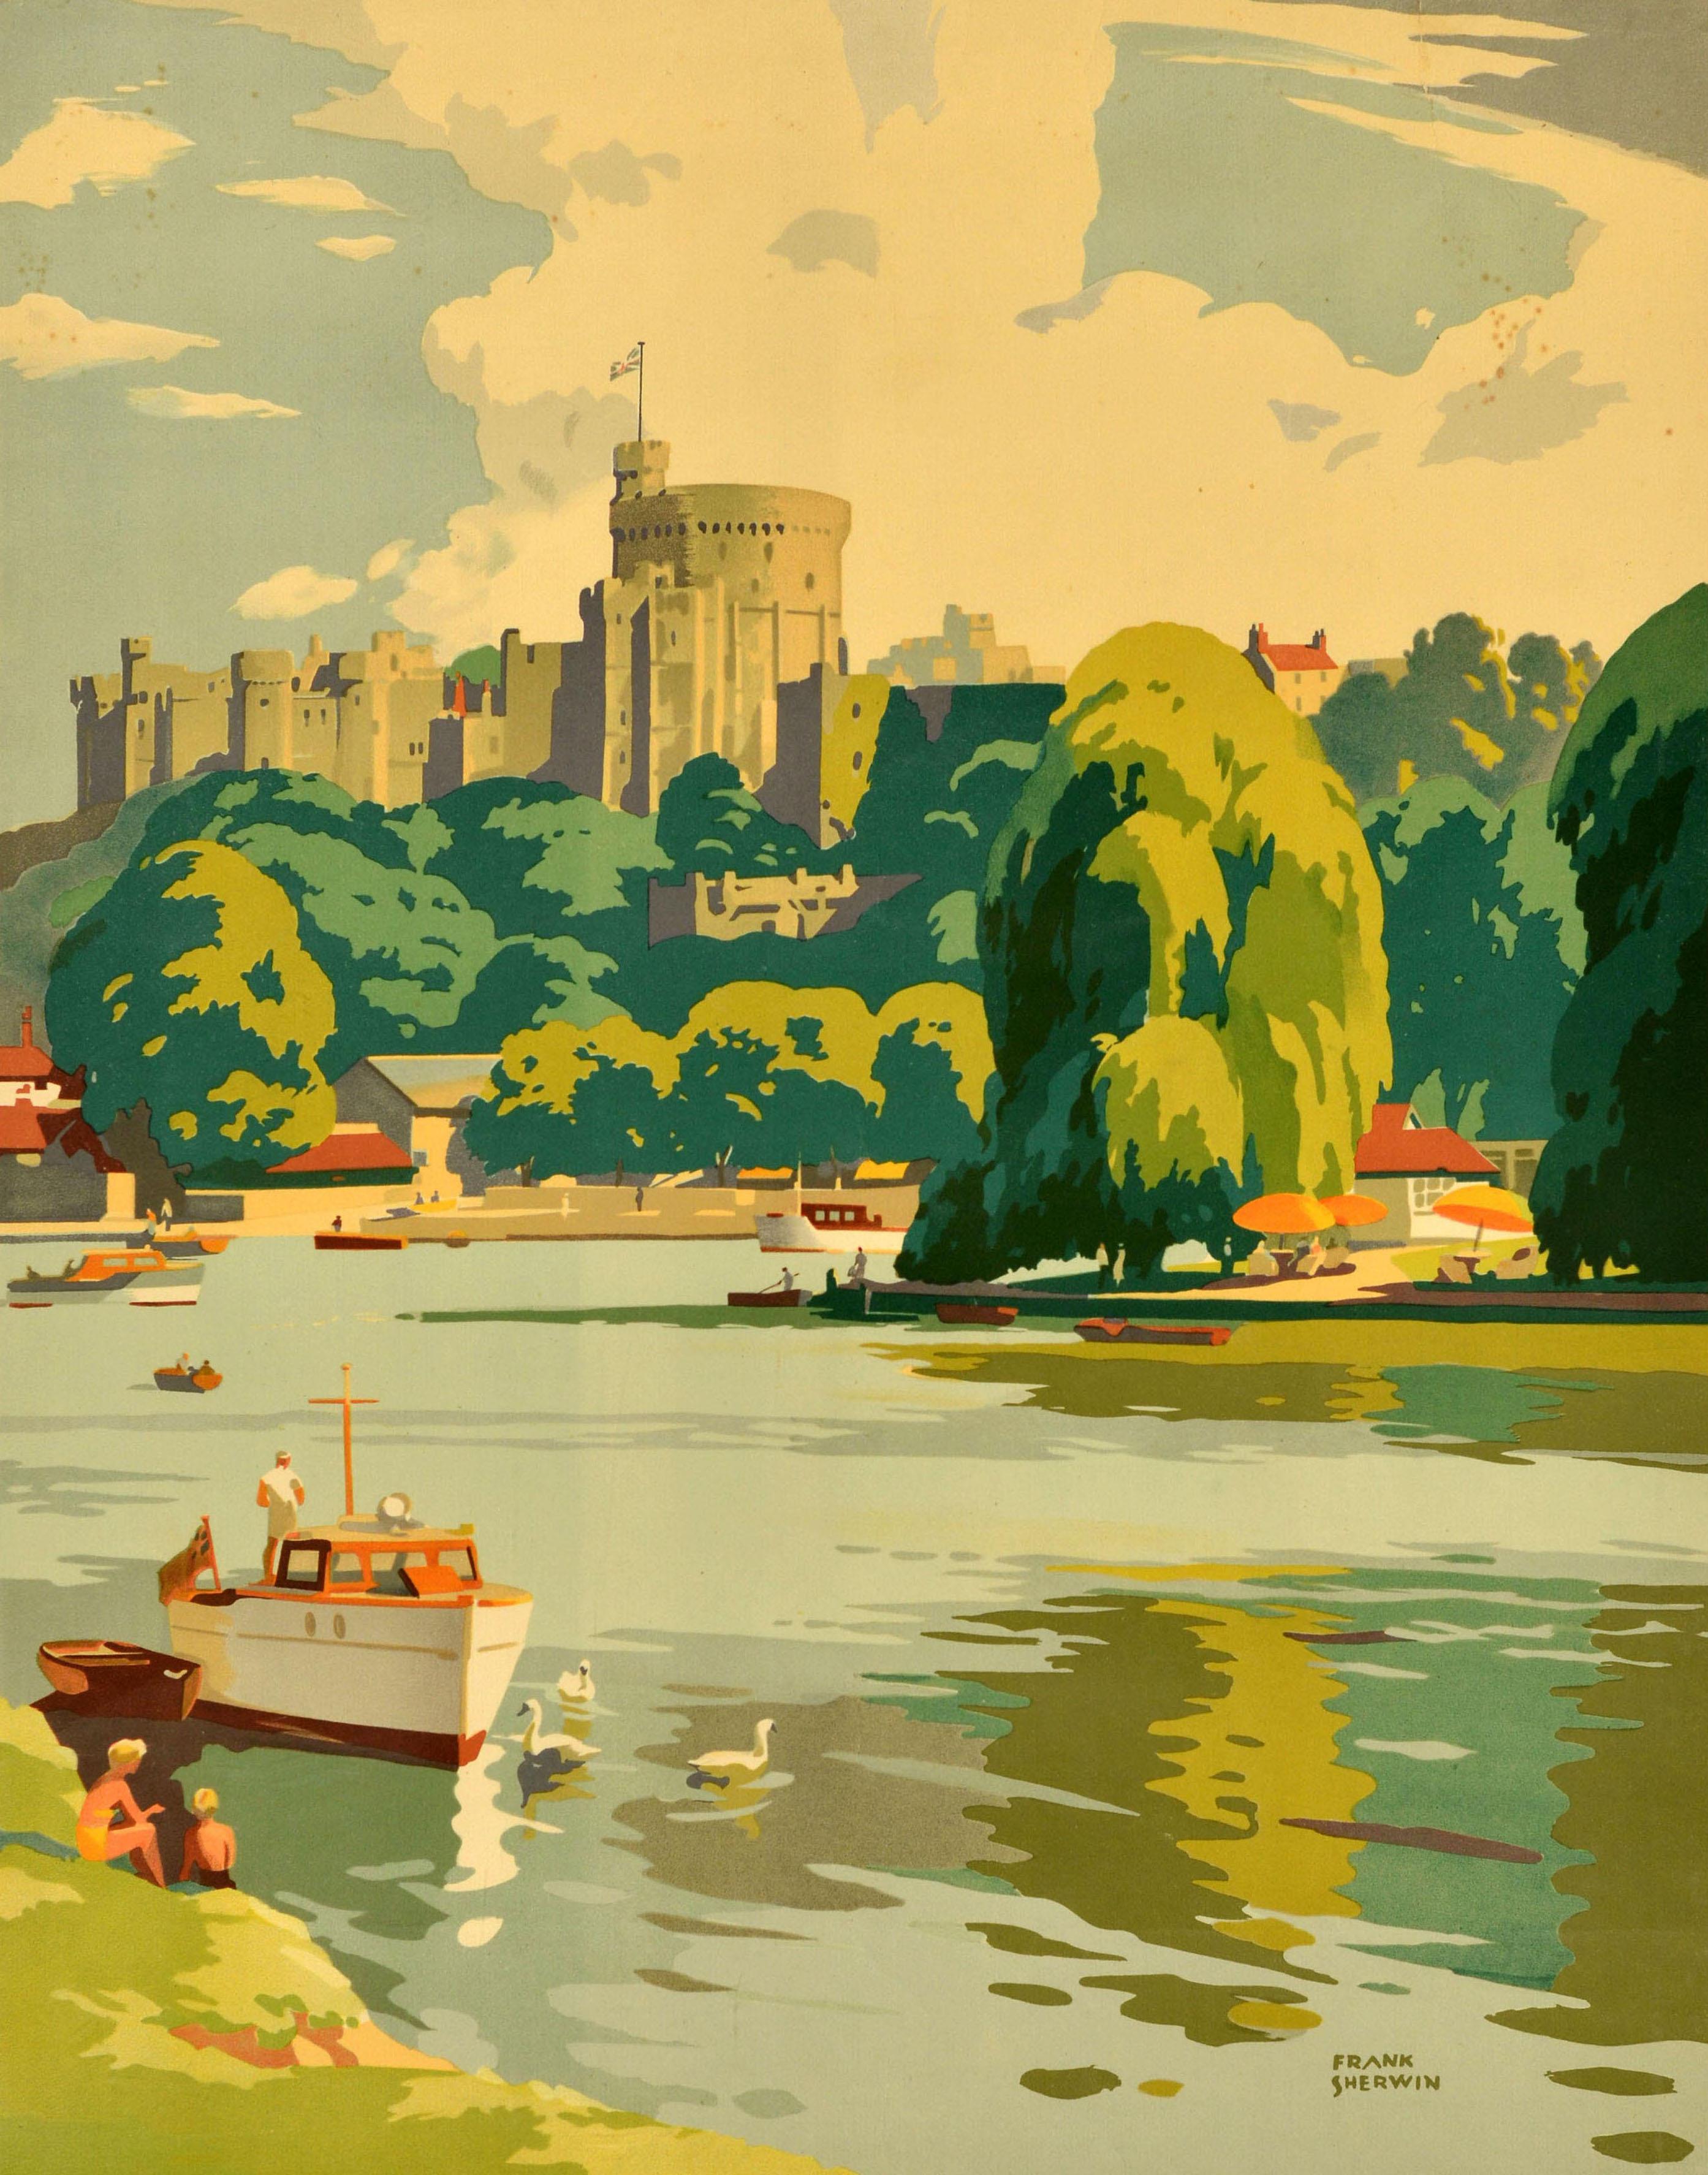 Original Vintage-Reiseplakat - Windsor See Britain by Train British Railways - mit szenischen Kunstwerken von Frank Sherwin (1896-1986), die eine Ansicht des historischen Schlosses Windsor mit Menschen am Ufer der Themse und Schwänen in einem Boot